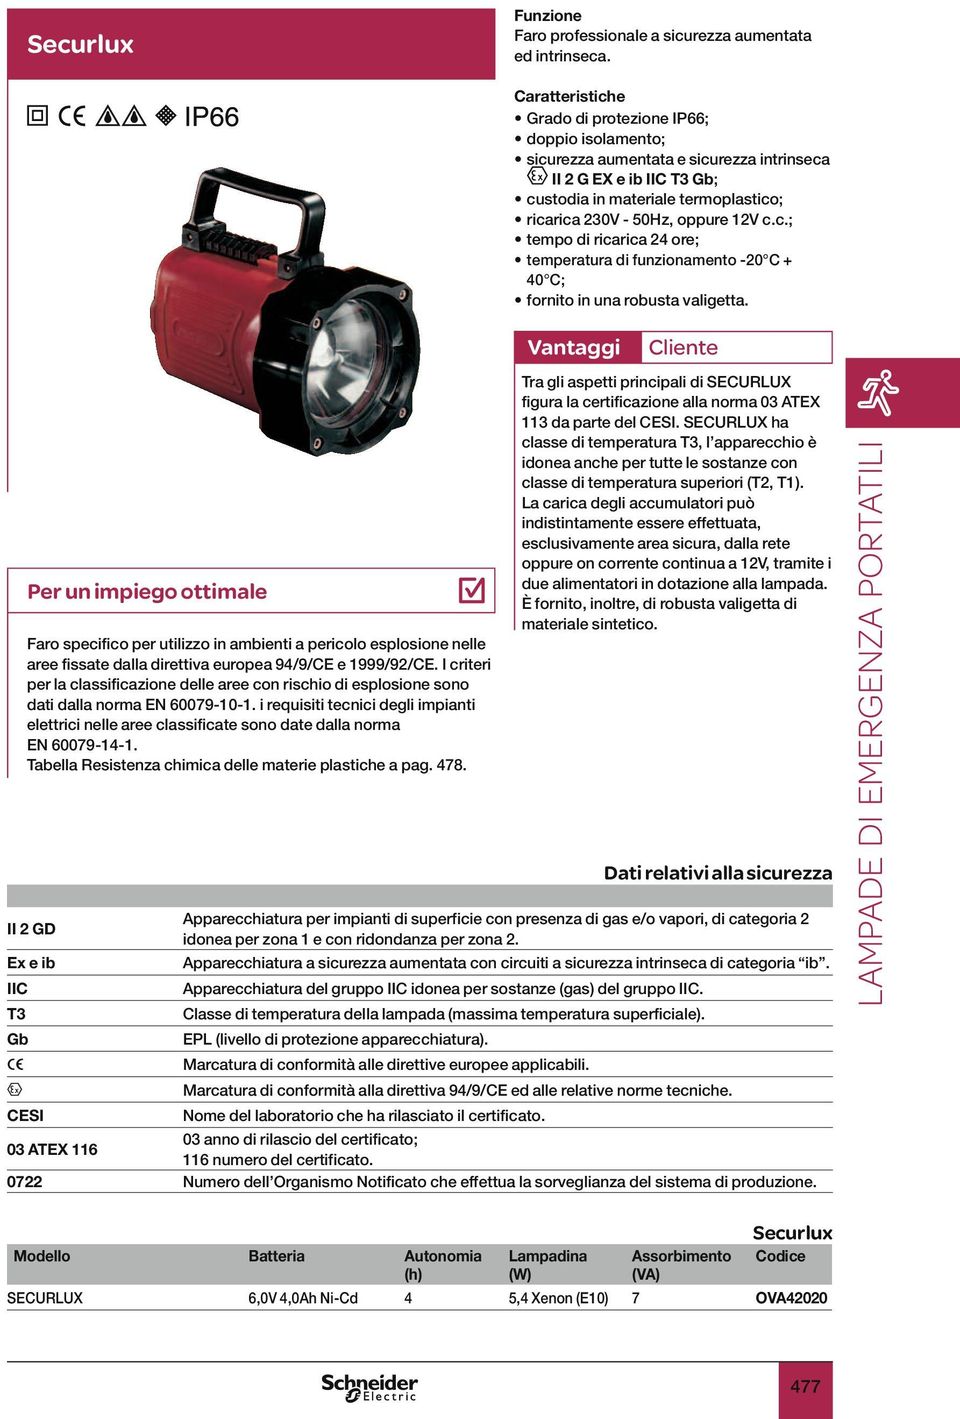 Faro specifico per utilizzo in ambienti a pericolo esplosione nelle aree fissate dalla direttiva europea 94/9/CE e 1999/92/CE.